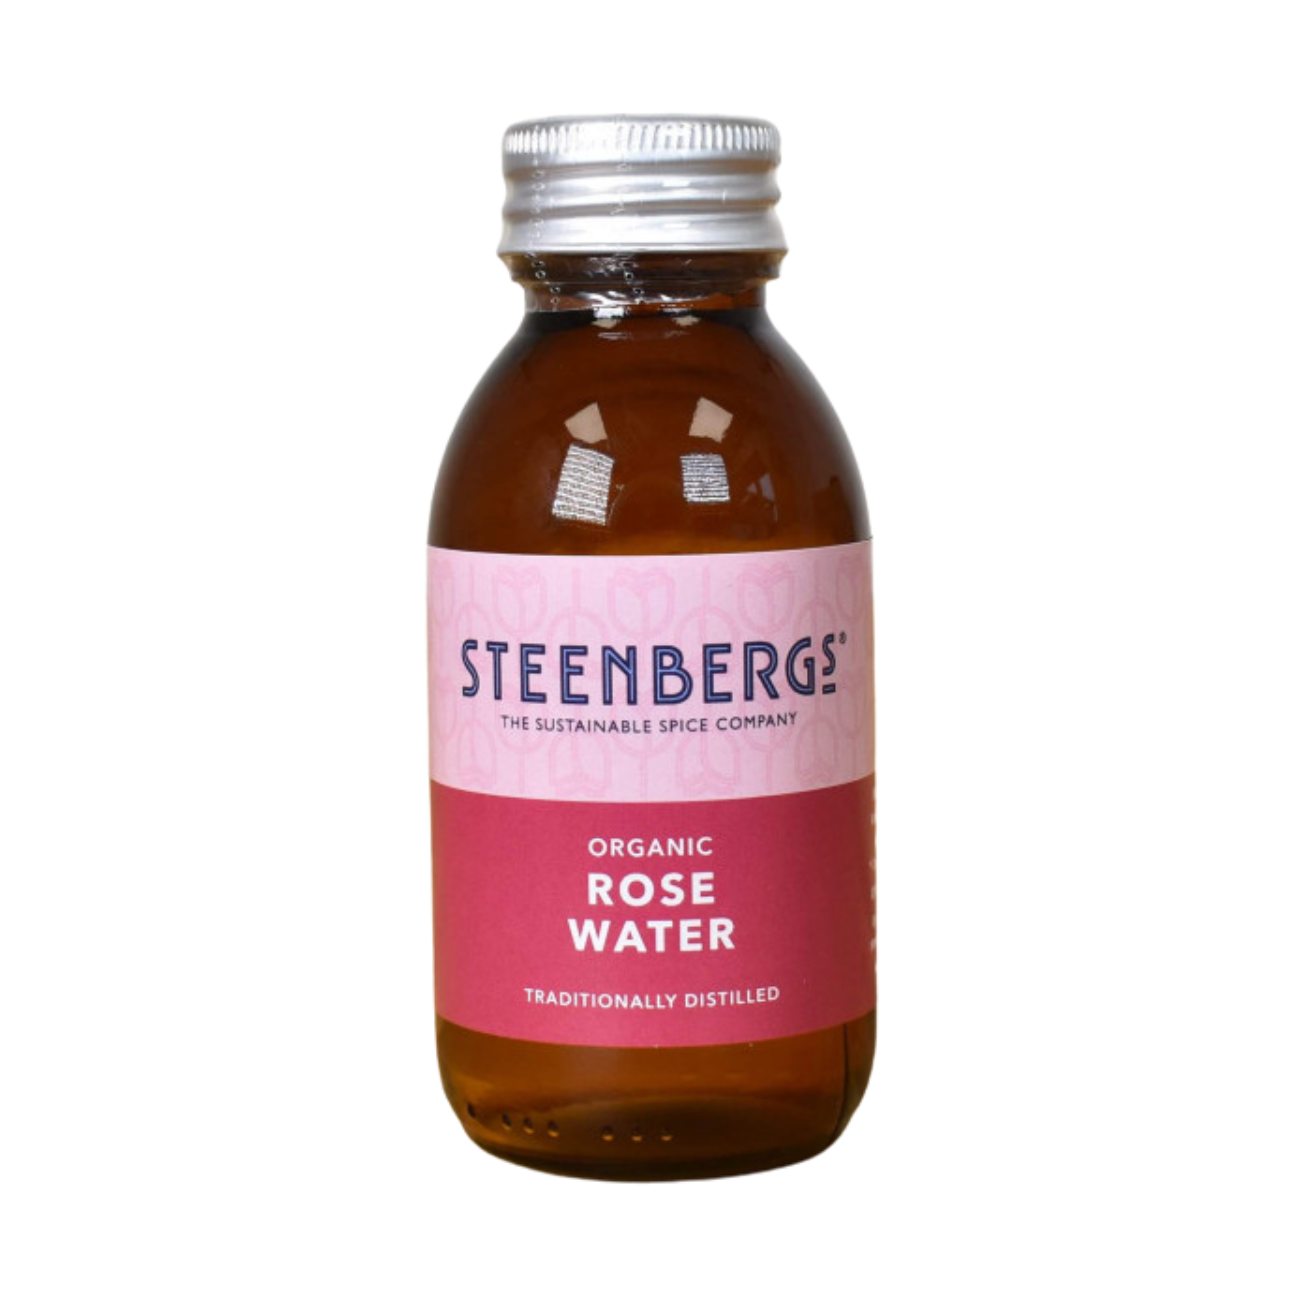 Organic Rose Water 100ml